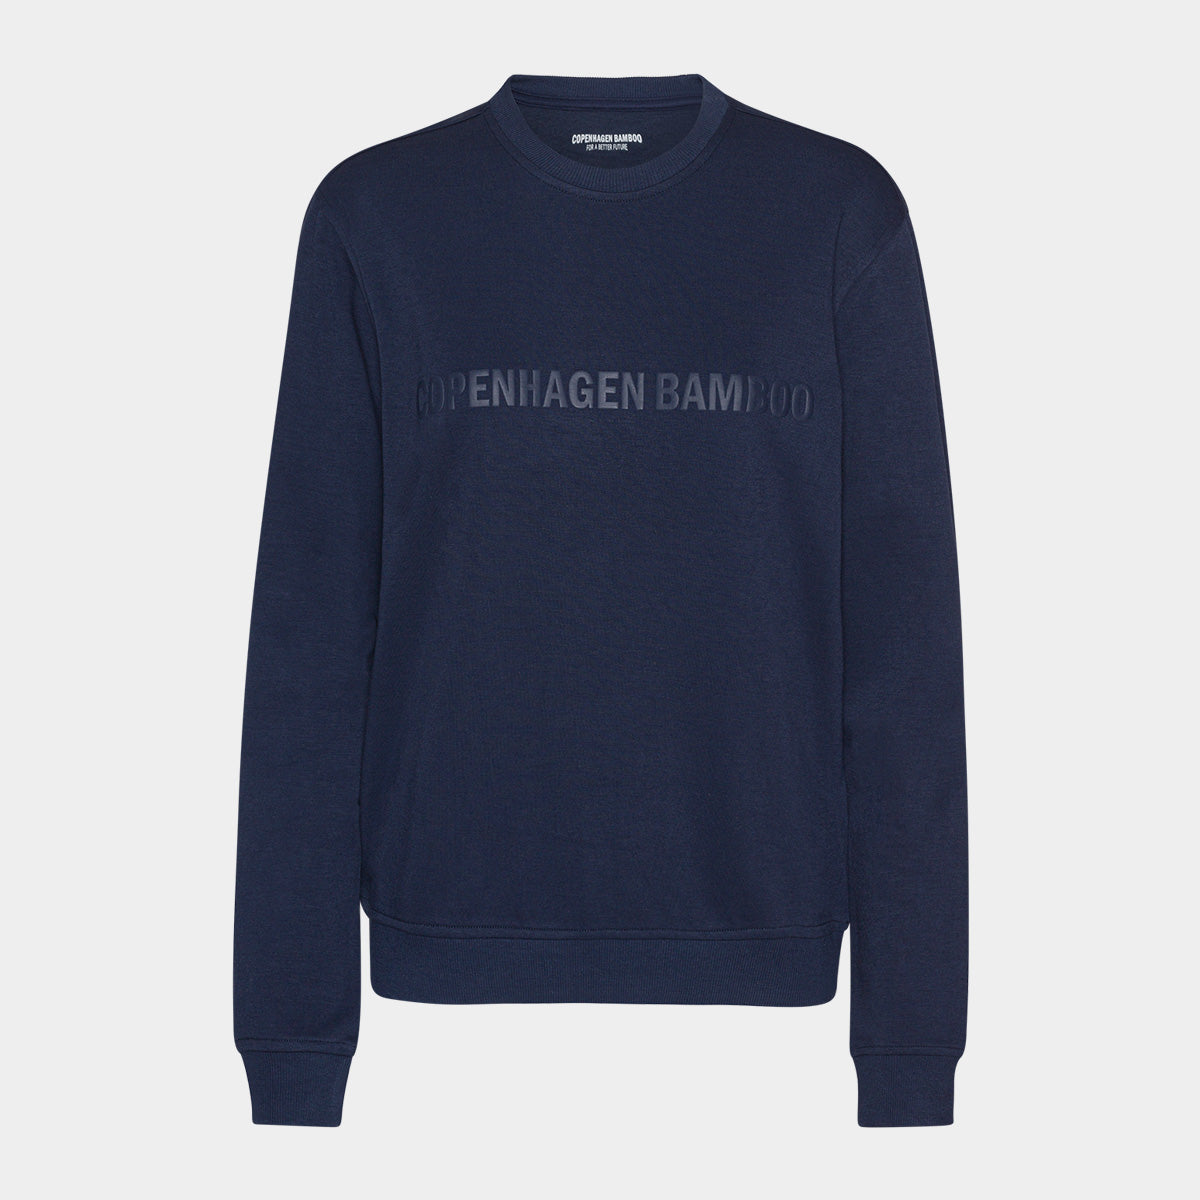 Se Navy bambus sweatshirt til mænd med logo fra Copenhagen Bamboo, S hos Bambustøj.dk